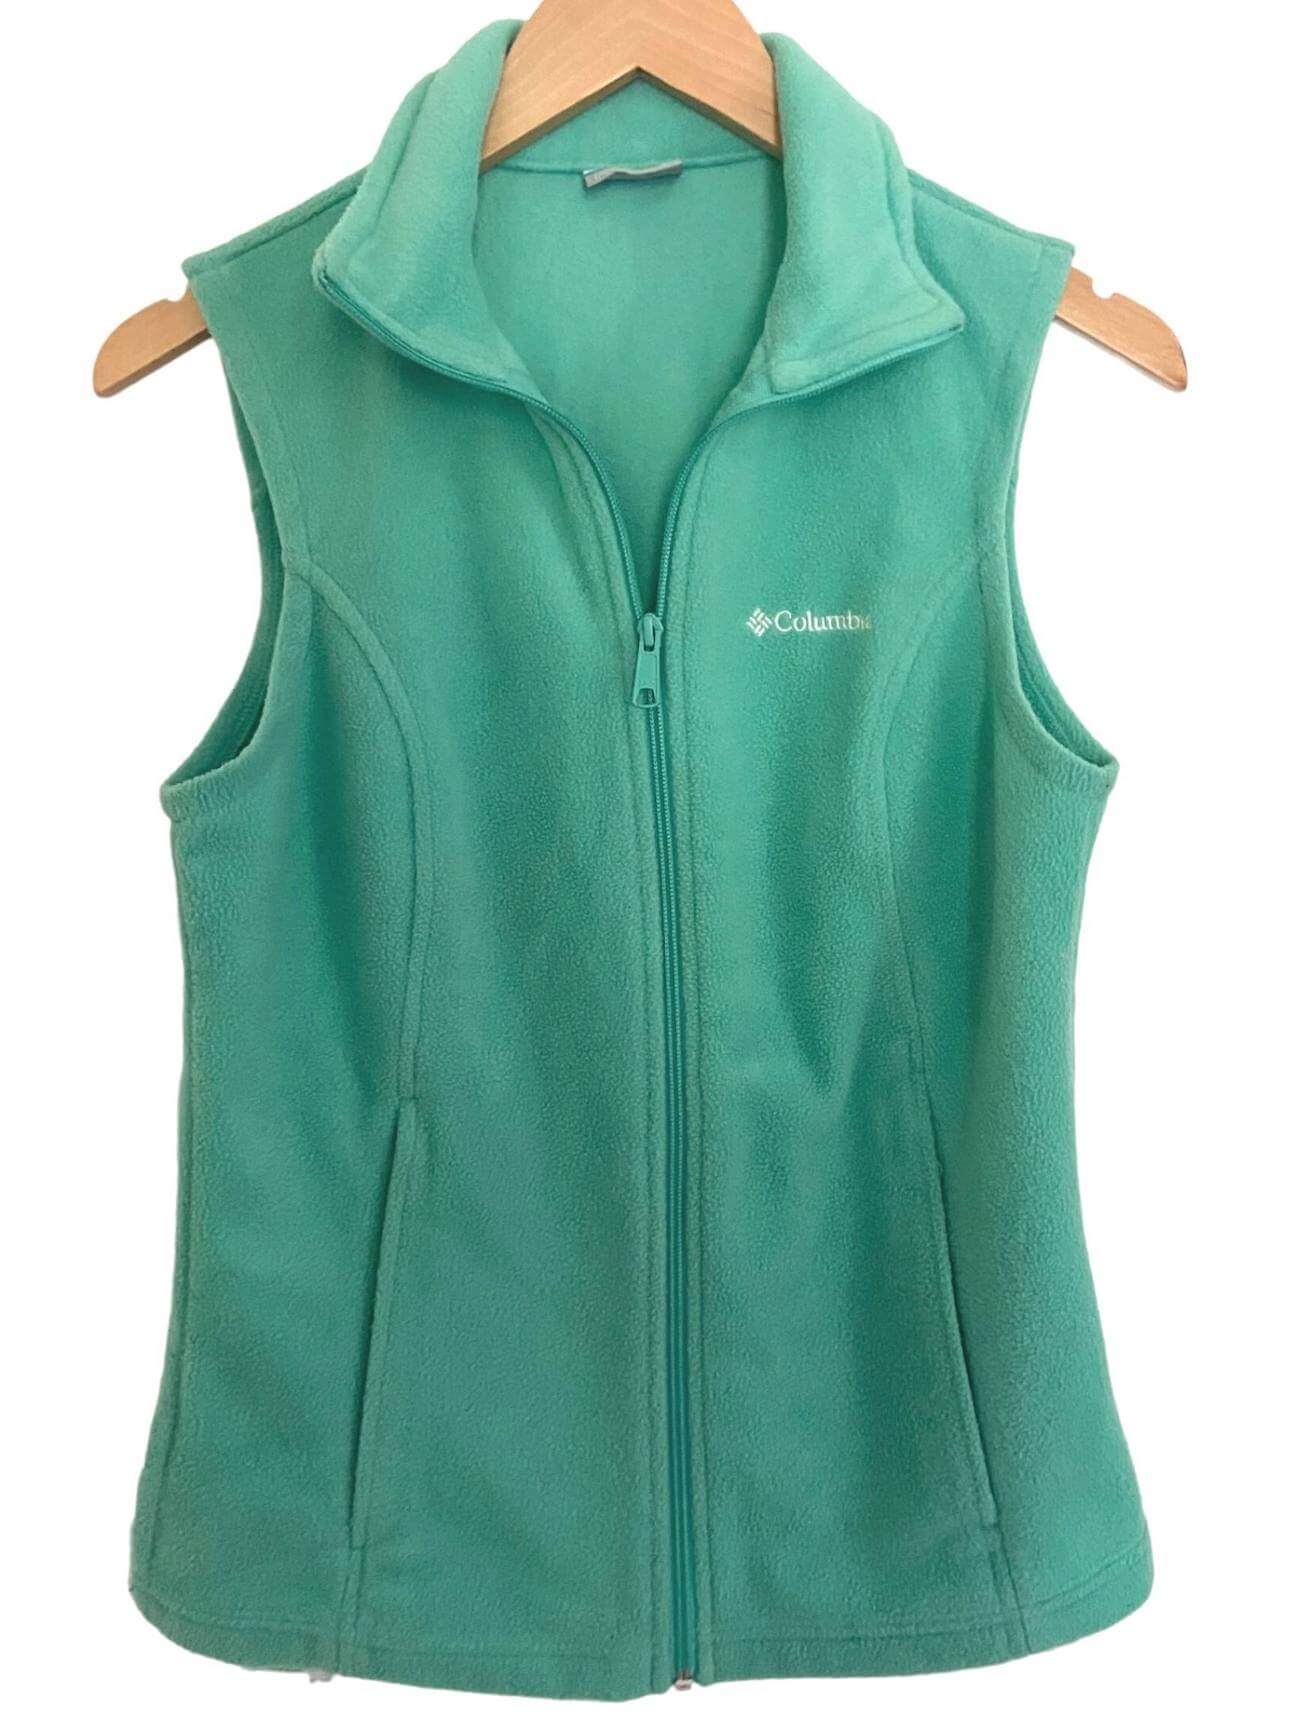 Cool Summer COLUMBIA fleece vest